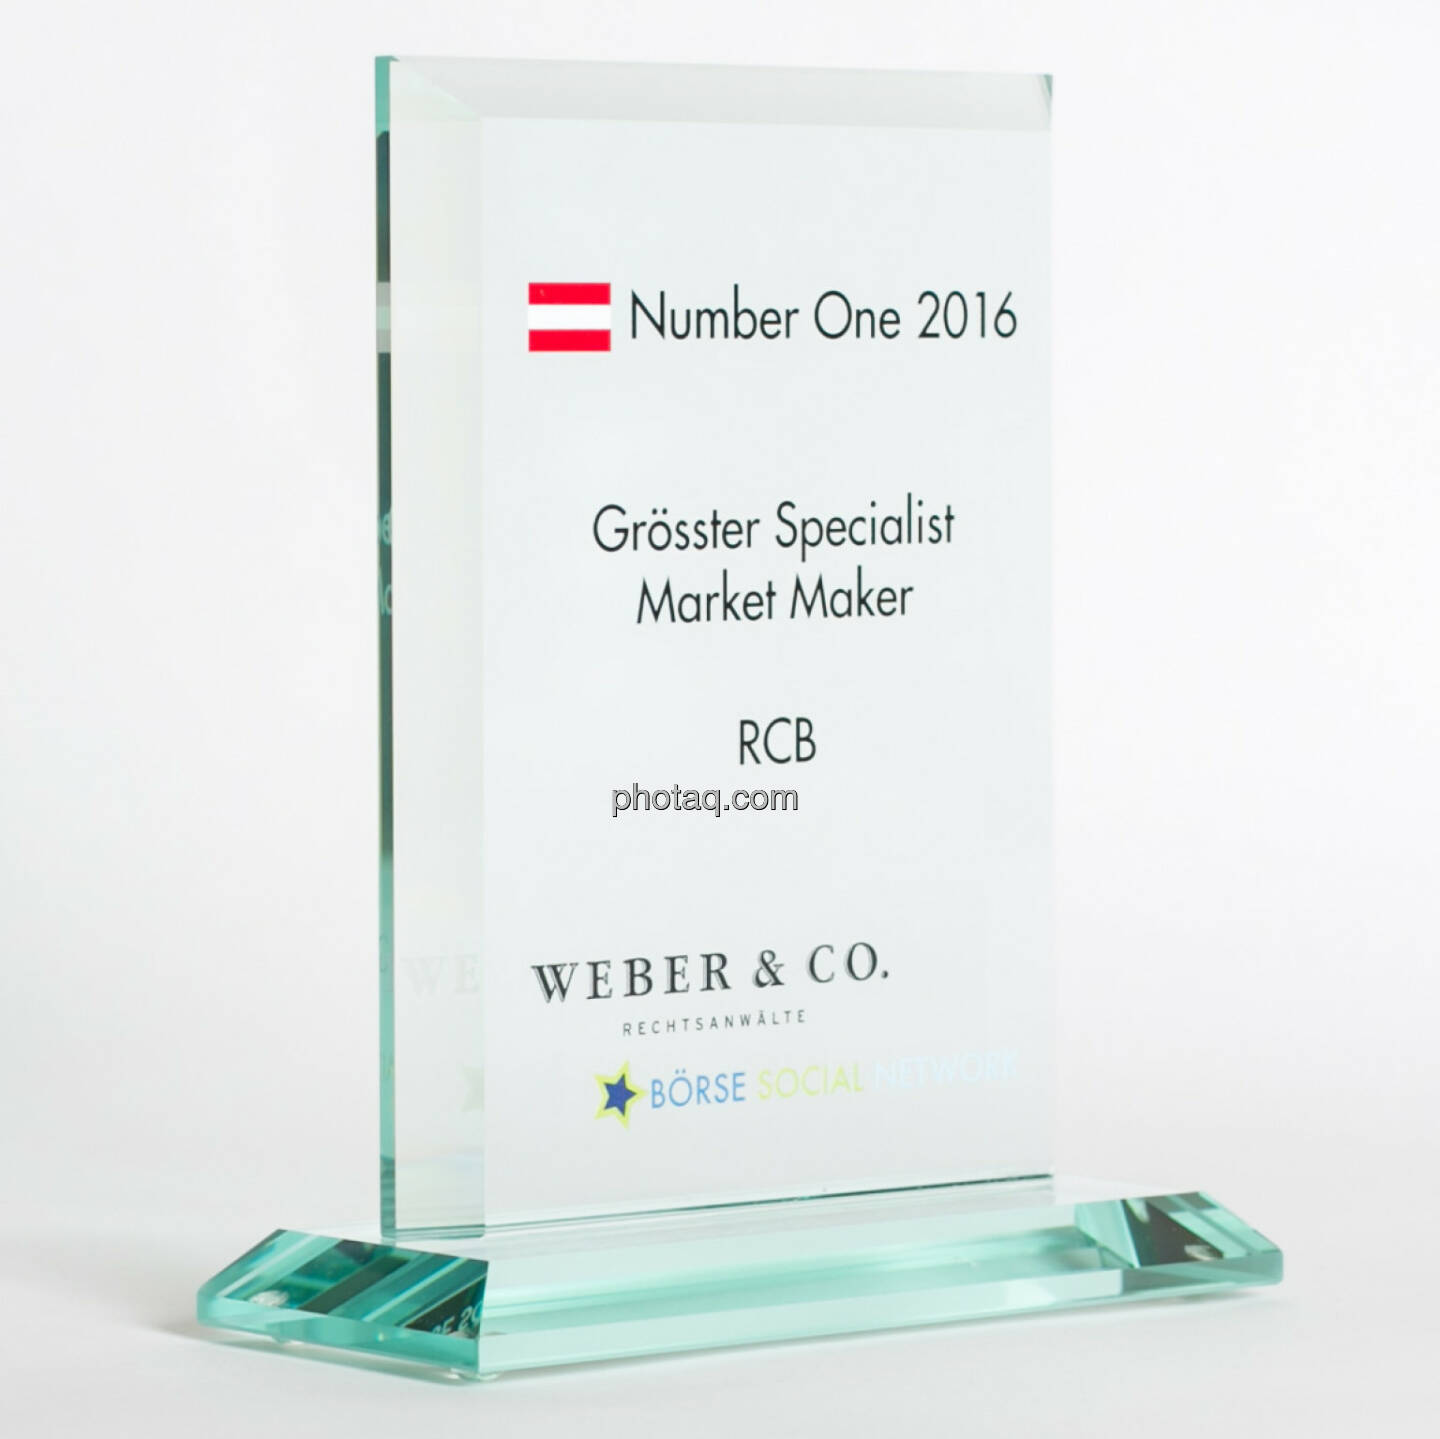 Number One Awards 2016 - Grösster Specialist Market Maker RCB